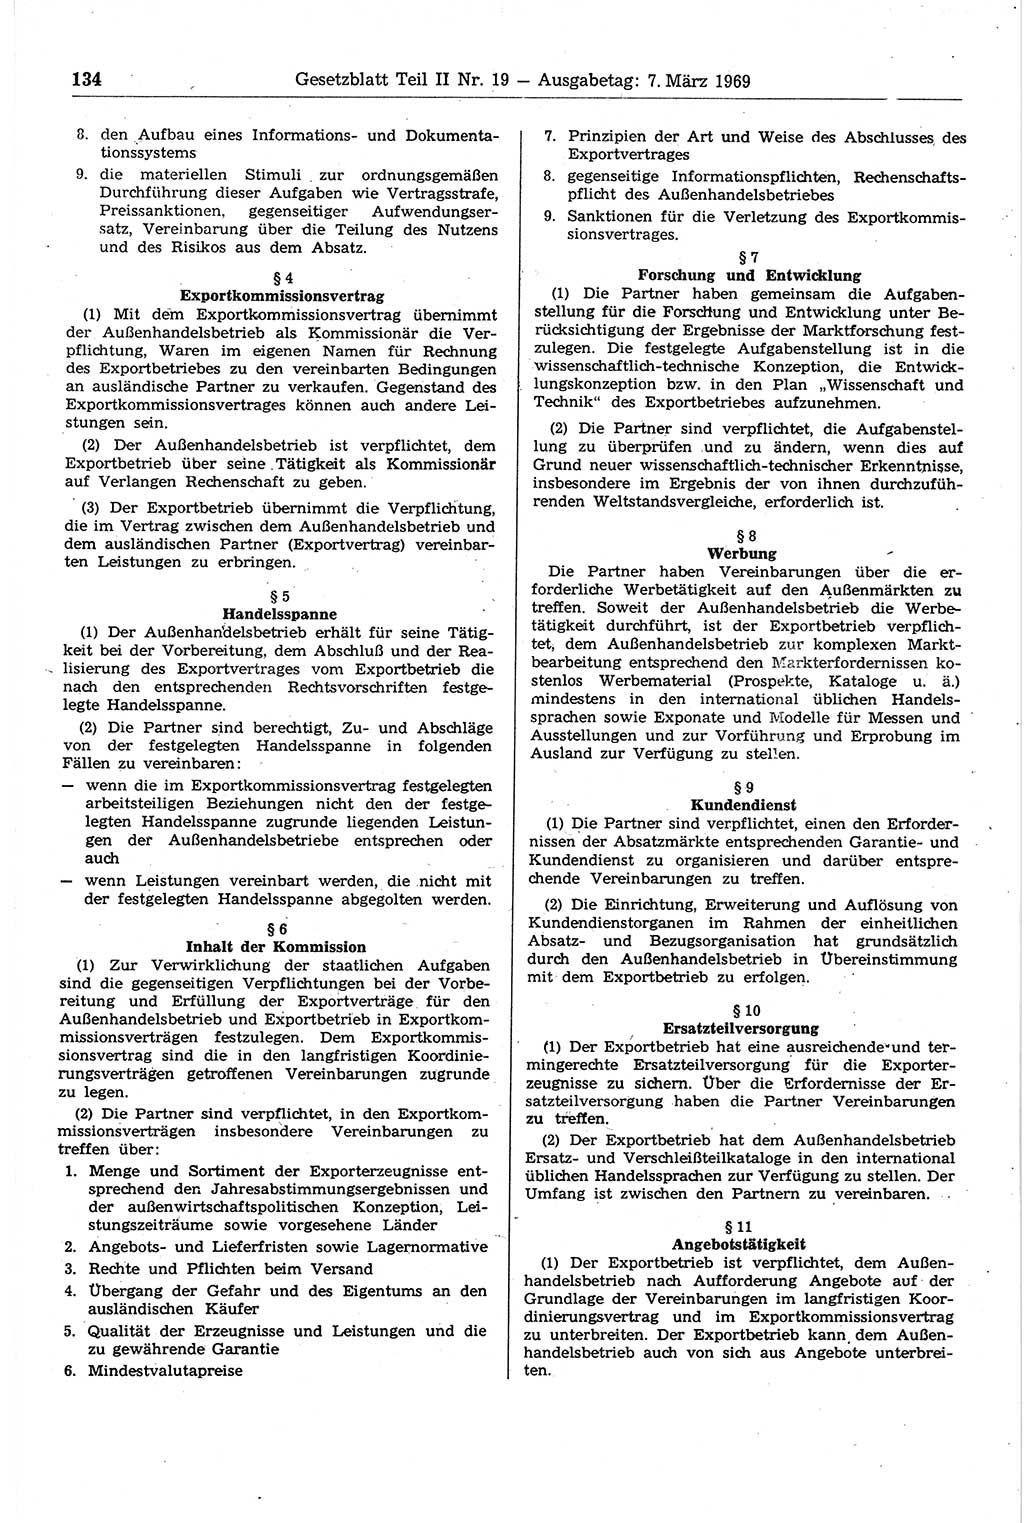 Gesetzblatt (GBl.) der Deutschen Demokratischen Republik (DDR) Teil ⅠⅠ 1969, Seite 134 (GBl. DDR ⅠⅠ 1969, S. 134)